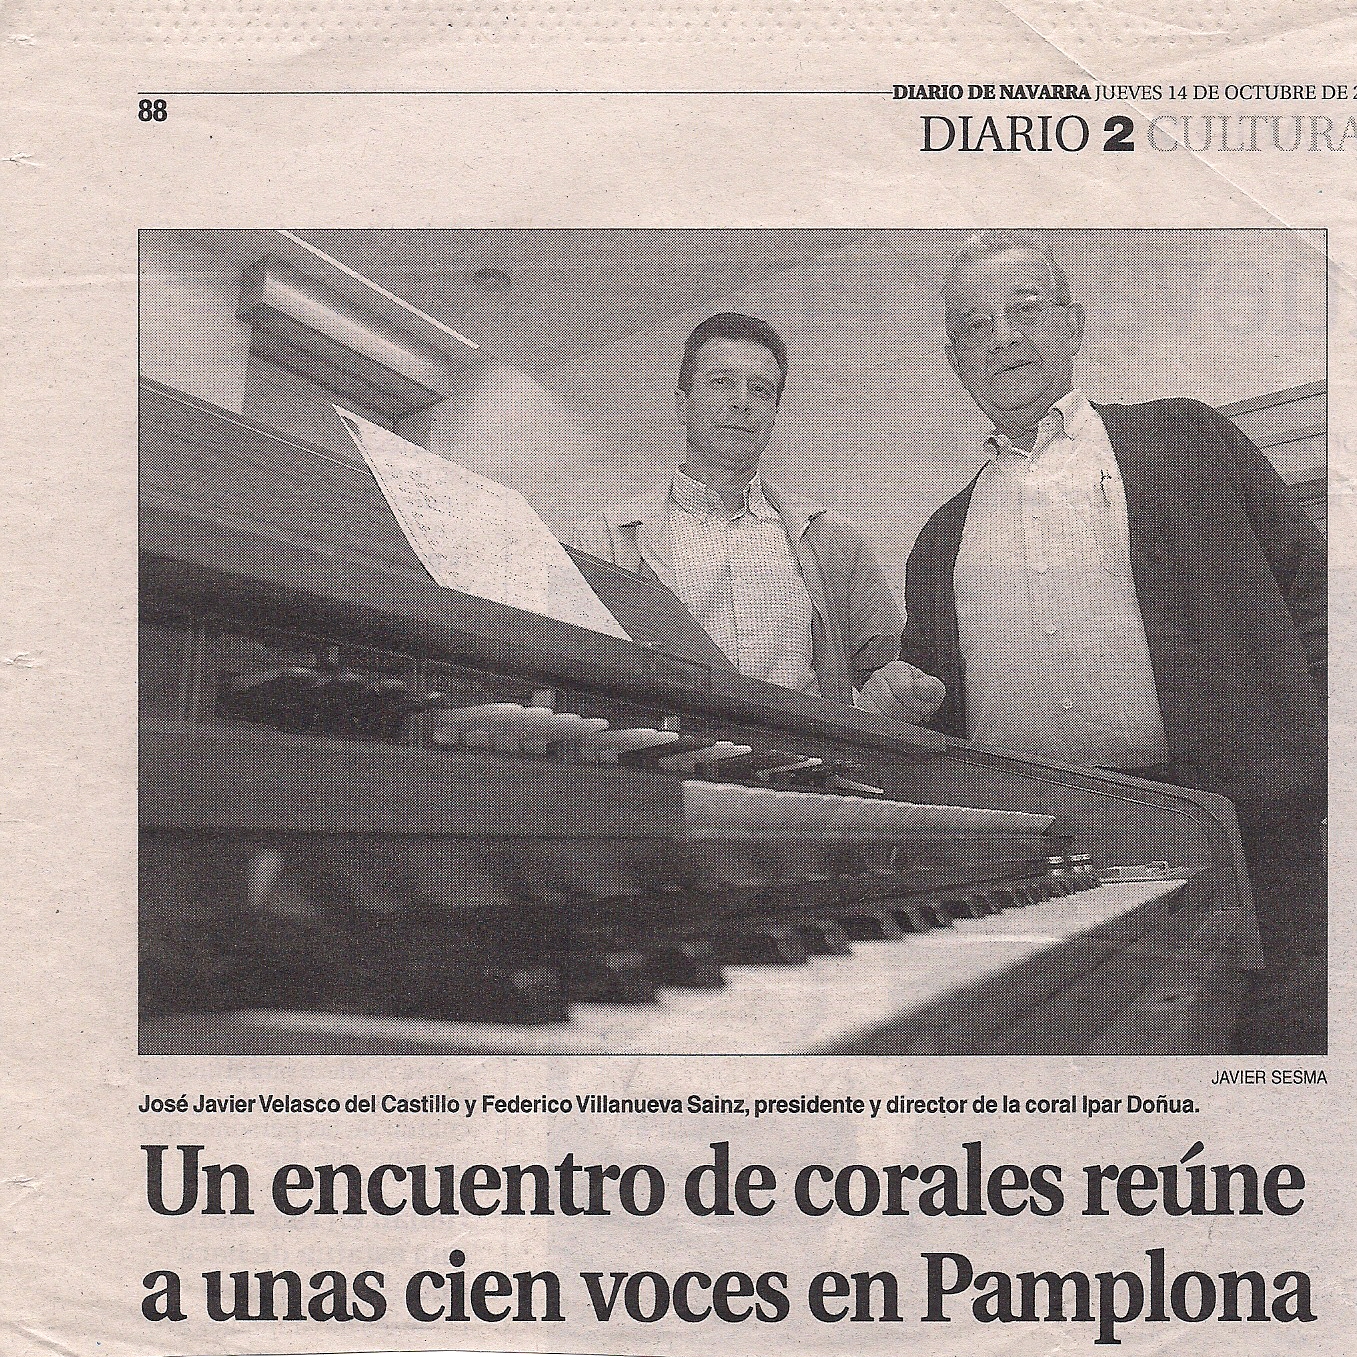 Octubre, 2004. Encuentro coral. Recorte de prensa (Diario de Navarra)